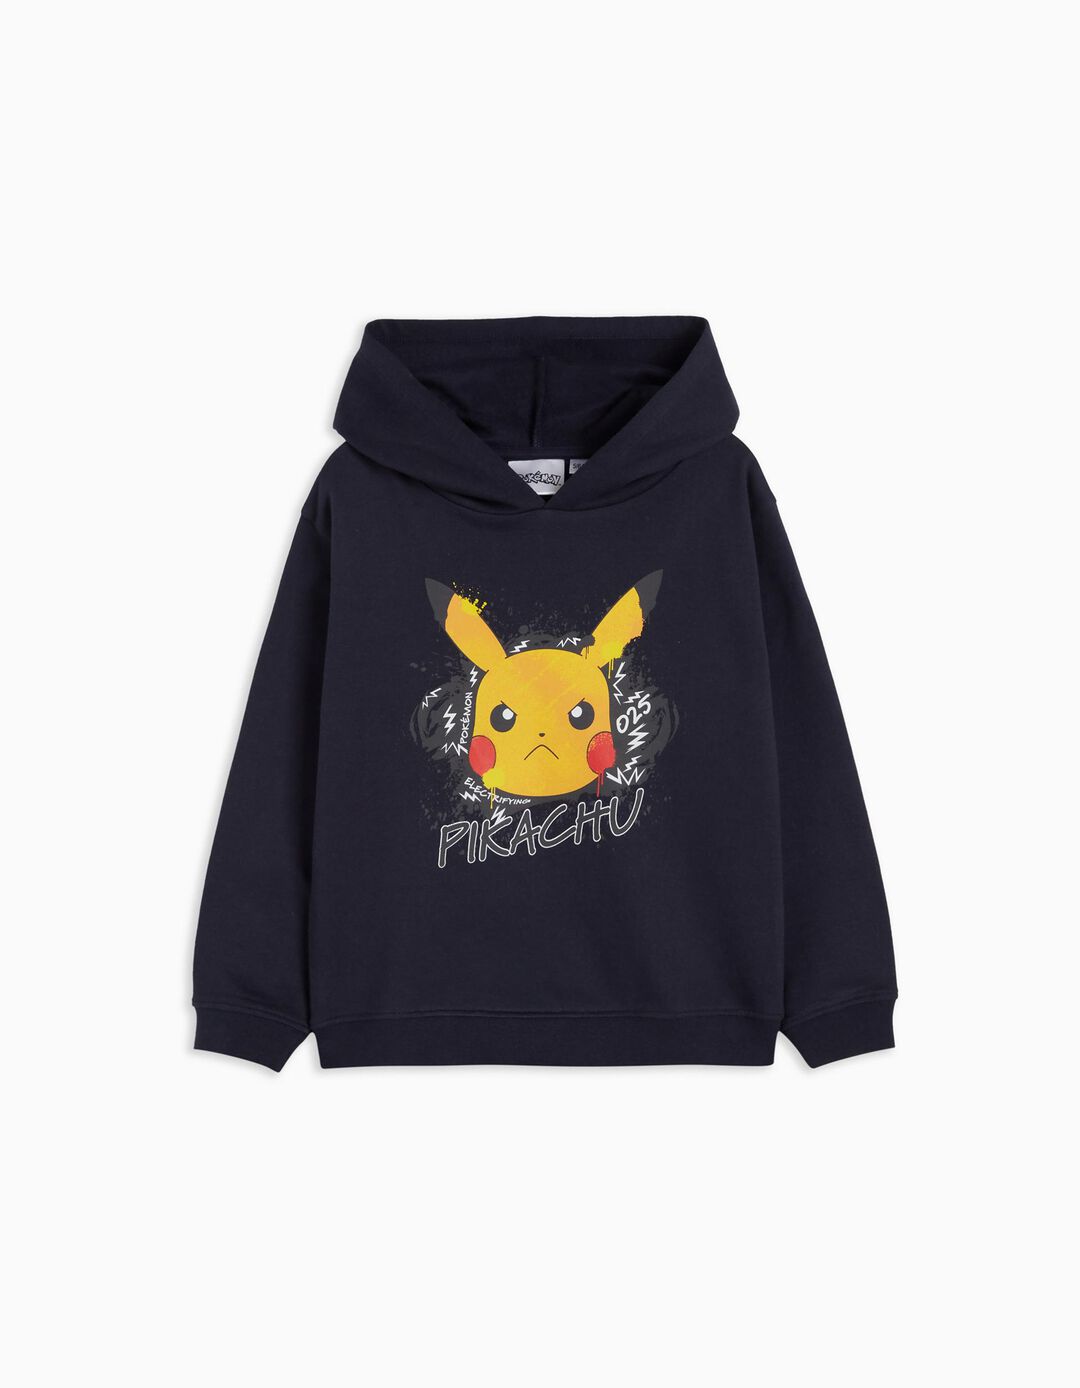 Sweatshirt Capuz 'Pokémon', Menino, Azul Escuro